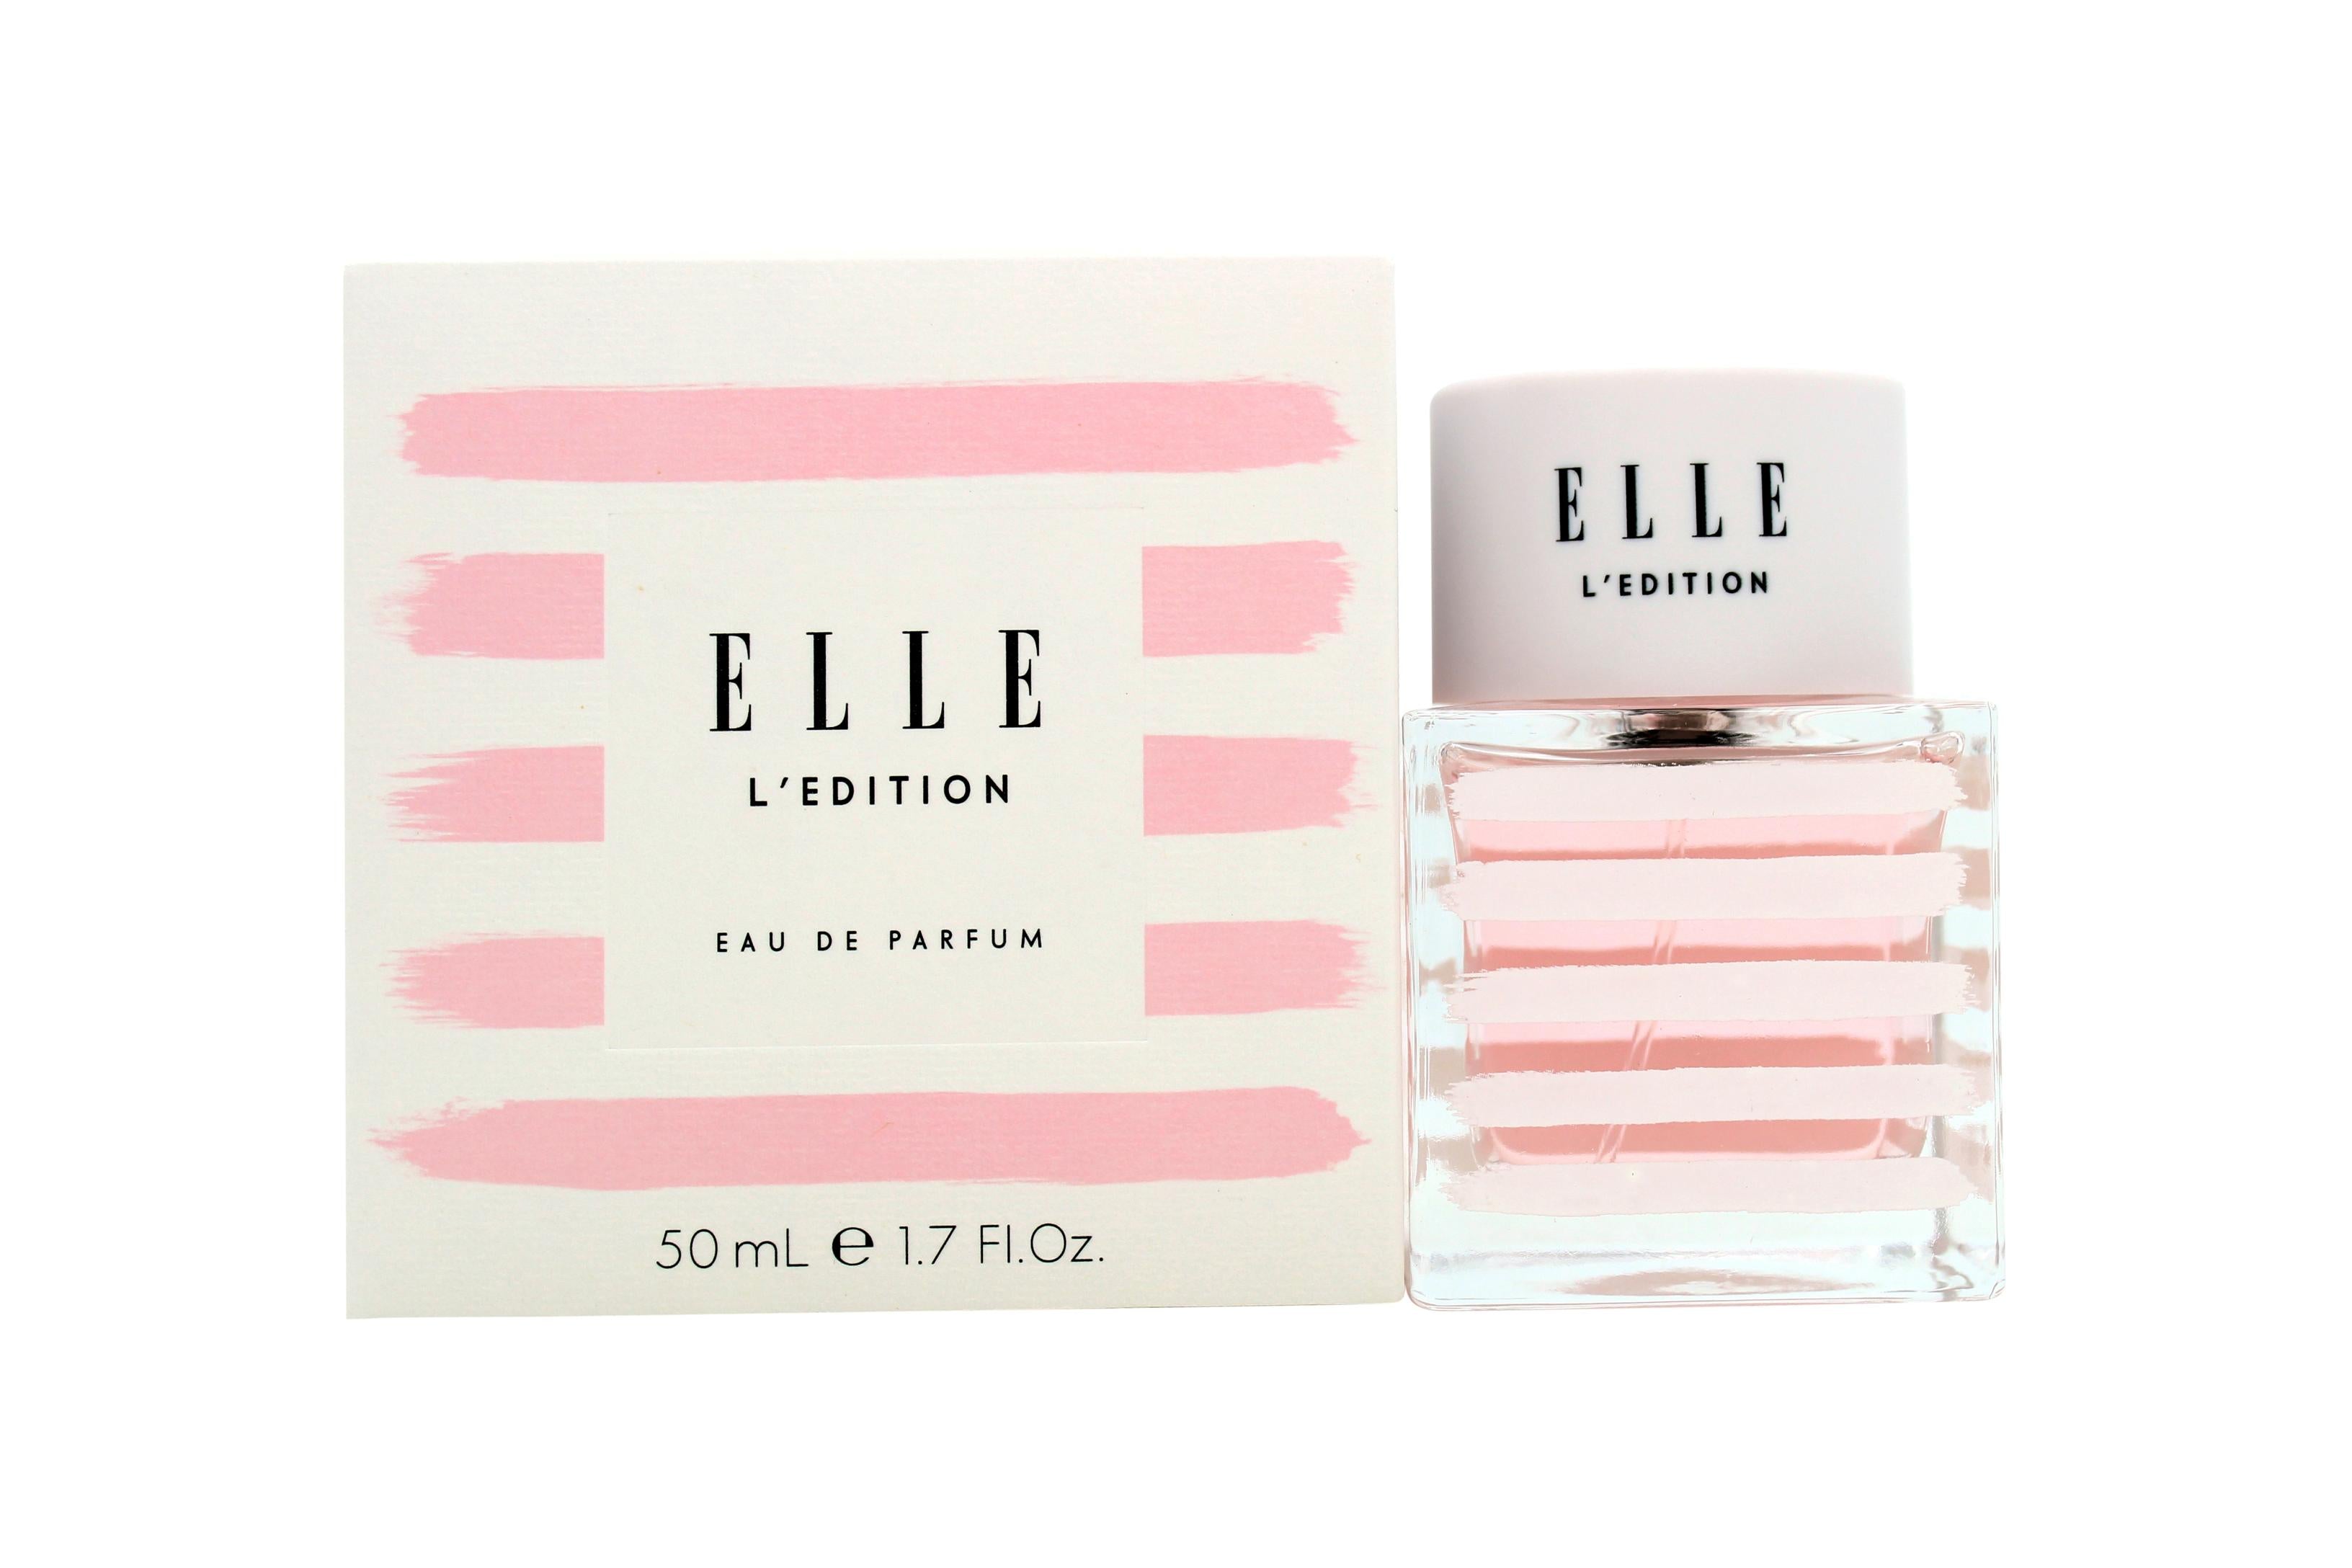 View Elle LEdition Eau de Parfum 50ml Spray information